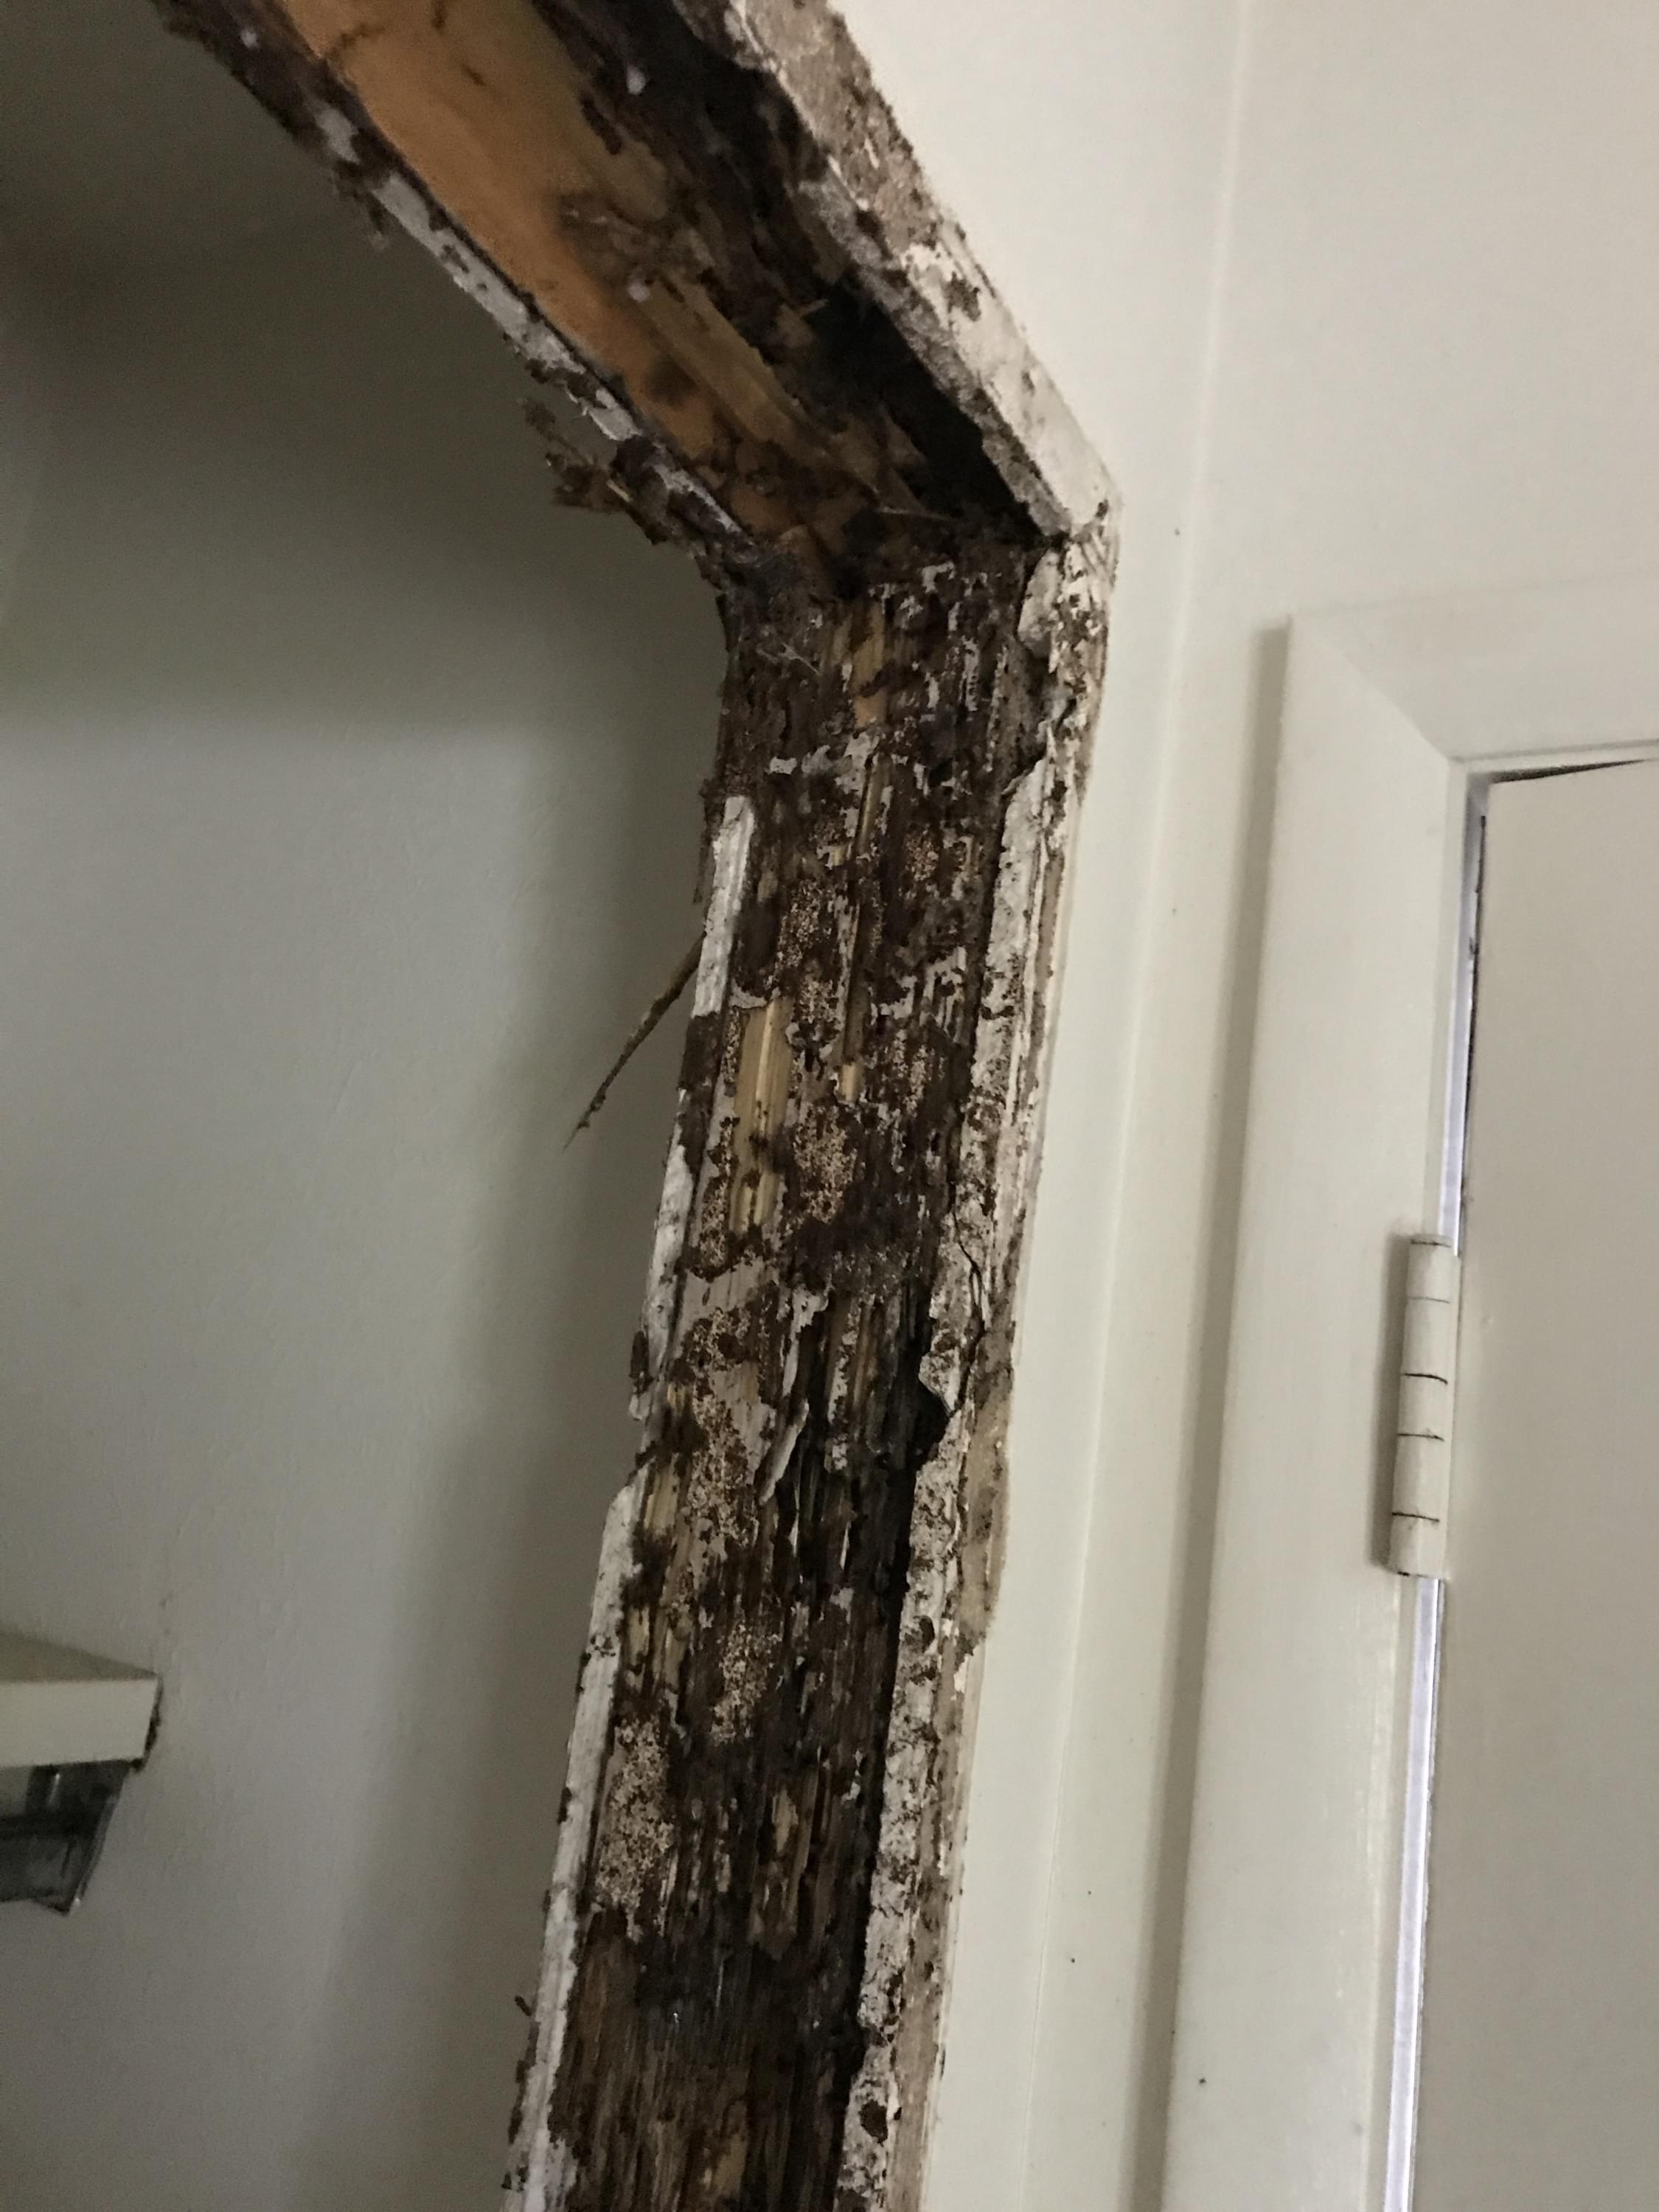 Termite damage on a door fram in Goshen indiana